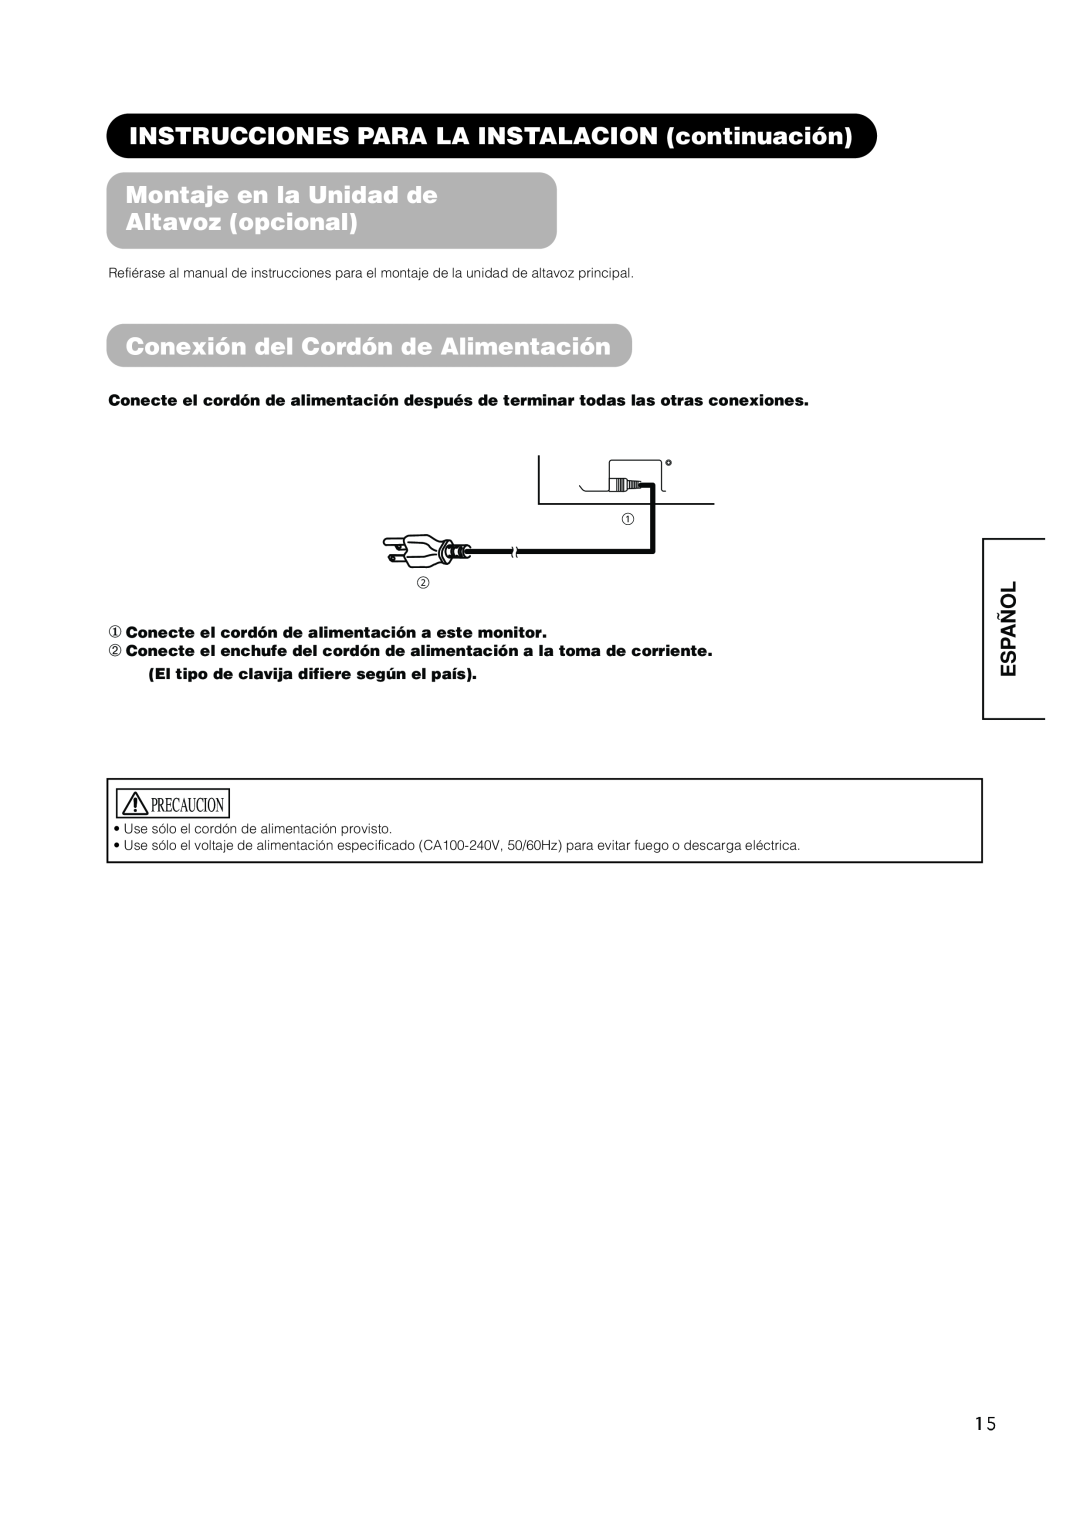 Hitachi PW1A user manual Montaje en la Unidad de Altavoz opcional, Conexión del Cordón de Alimentación, Español 